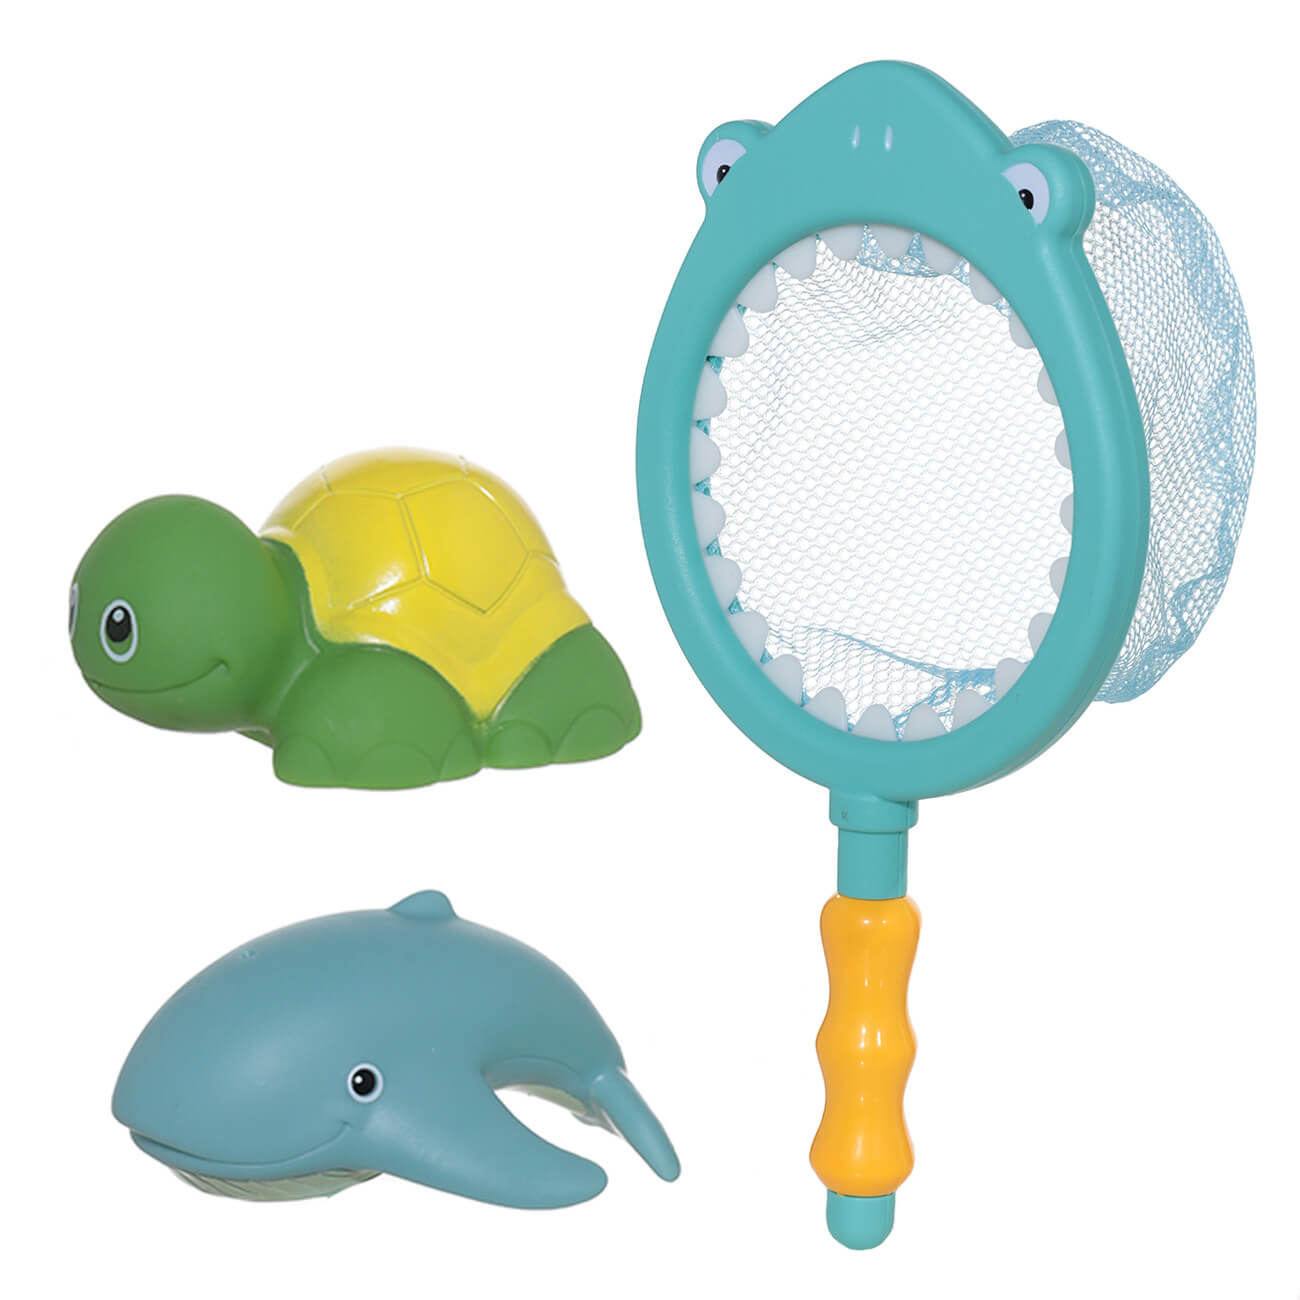 Набор игрушек для купания, 3 пр, сачок/игрушки, резина/пластик, Акула, Aquatic animals набор пальчиковых игрушек